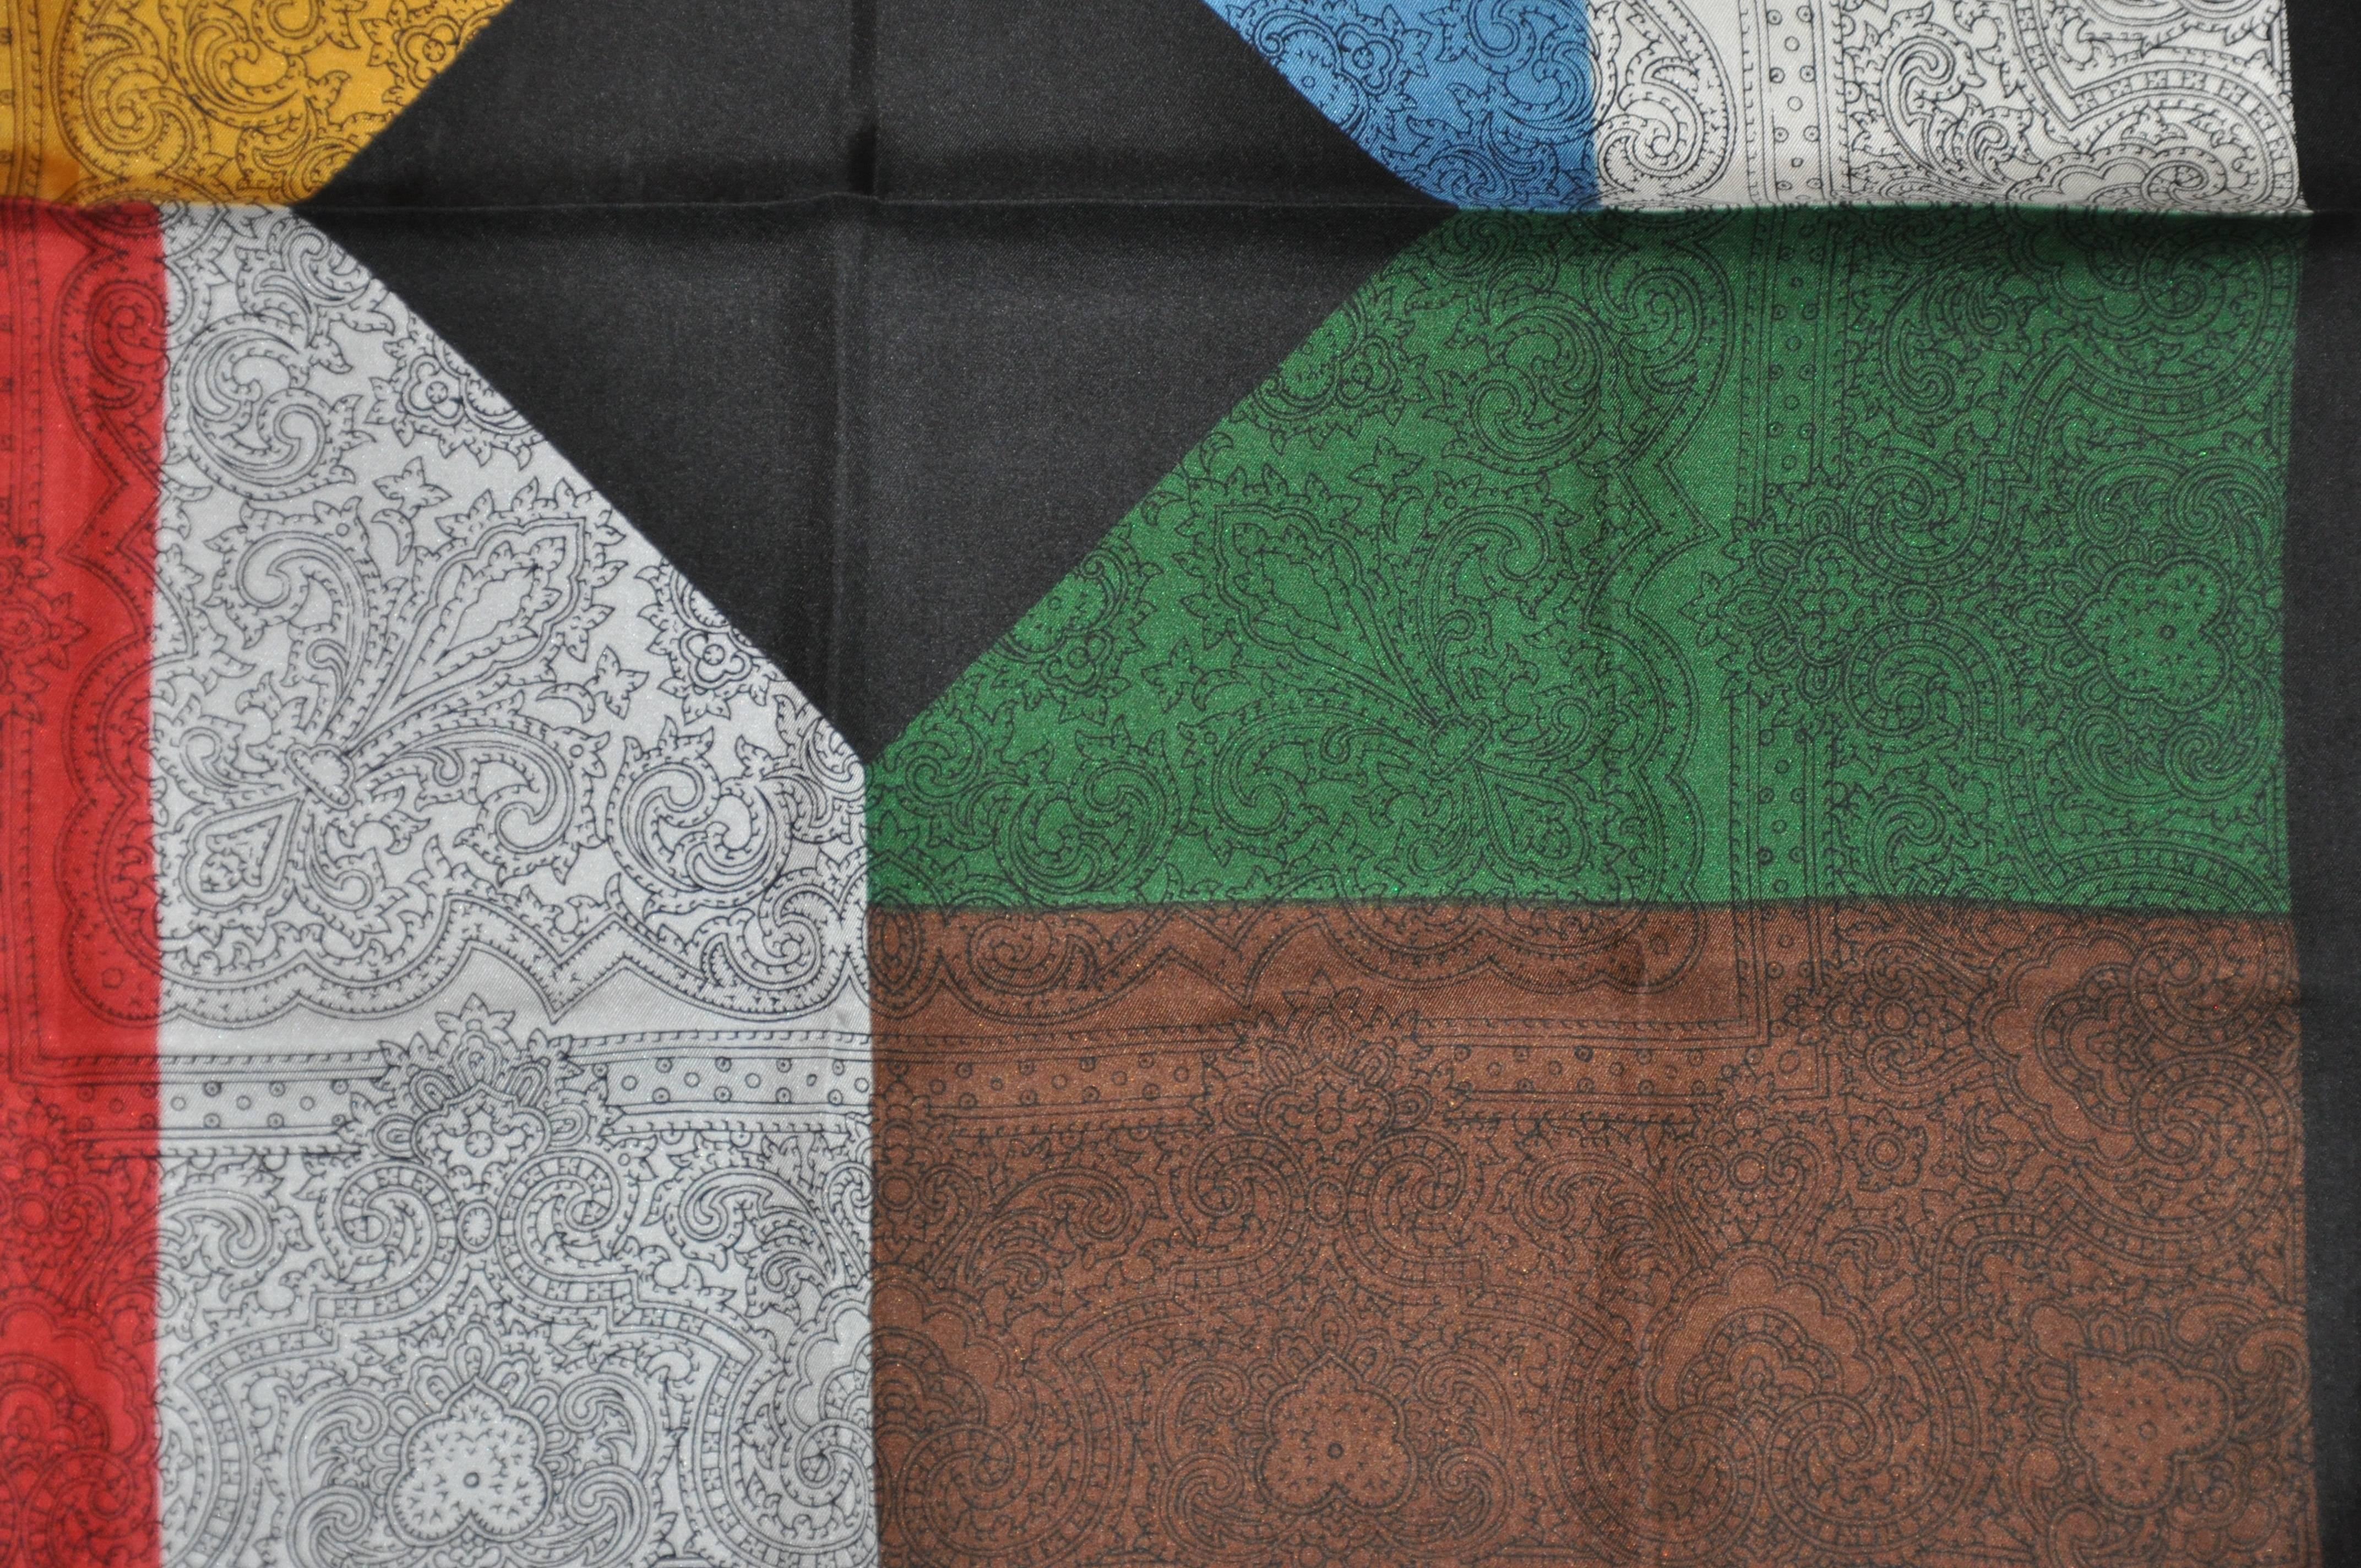      Mouchoir Dumont en soie multicolore multi-palettes merveilleusement élégant, accentué par des bords roulés à la main, mesure 17 pouces par 17 pouces. Fabriquées en Italie.